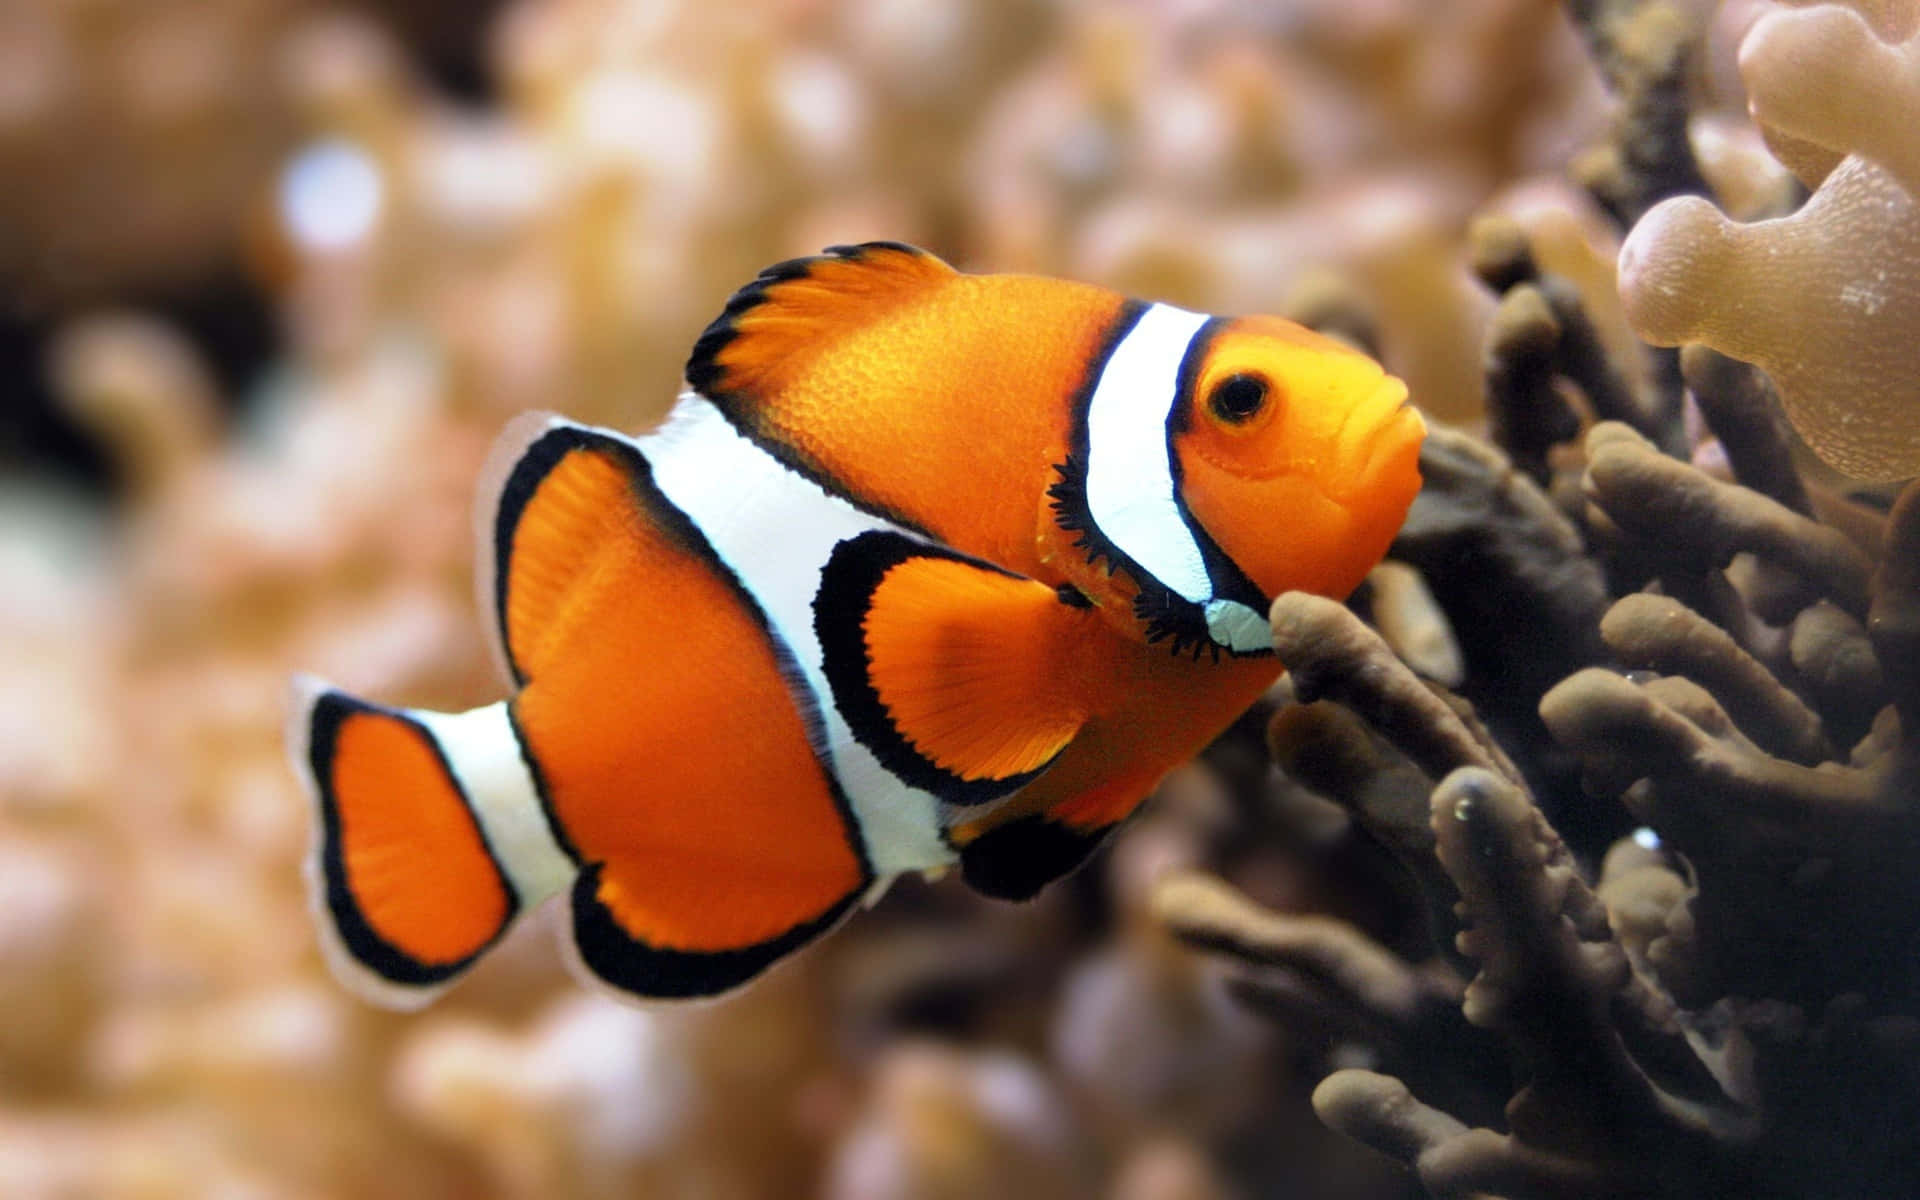 Etnærbillede Af En Fisk I Levende Orange Og Gule Farver I Krystalklart Vand.